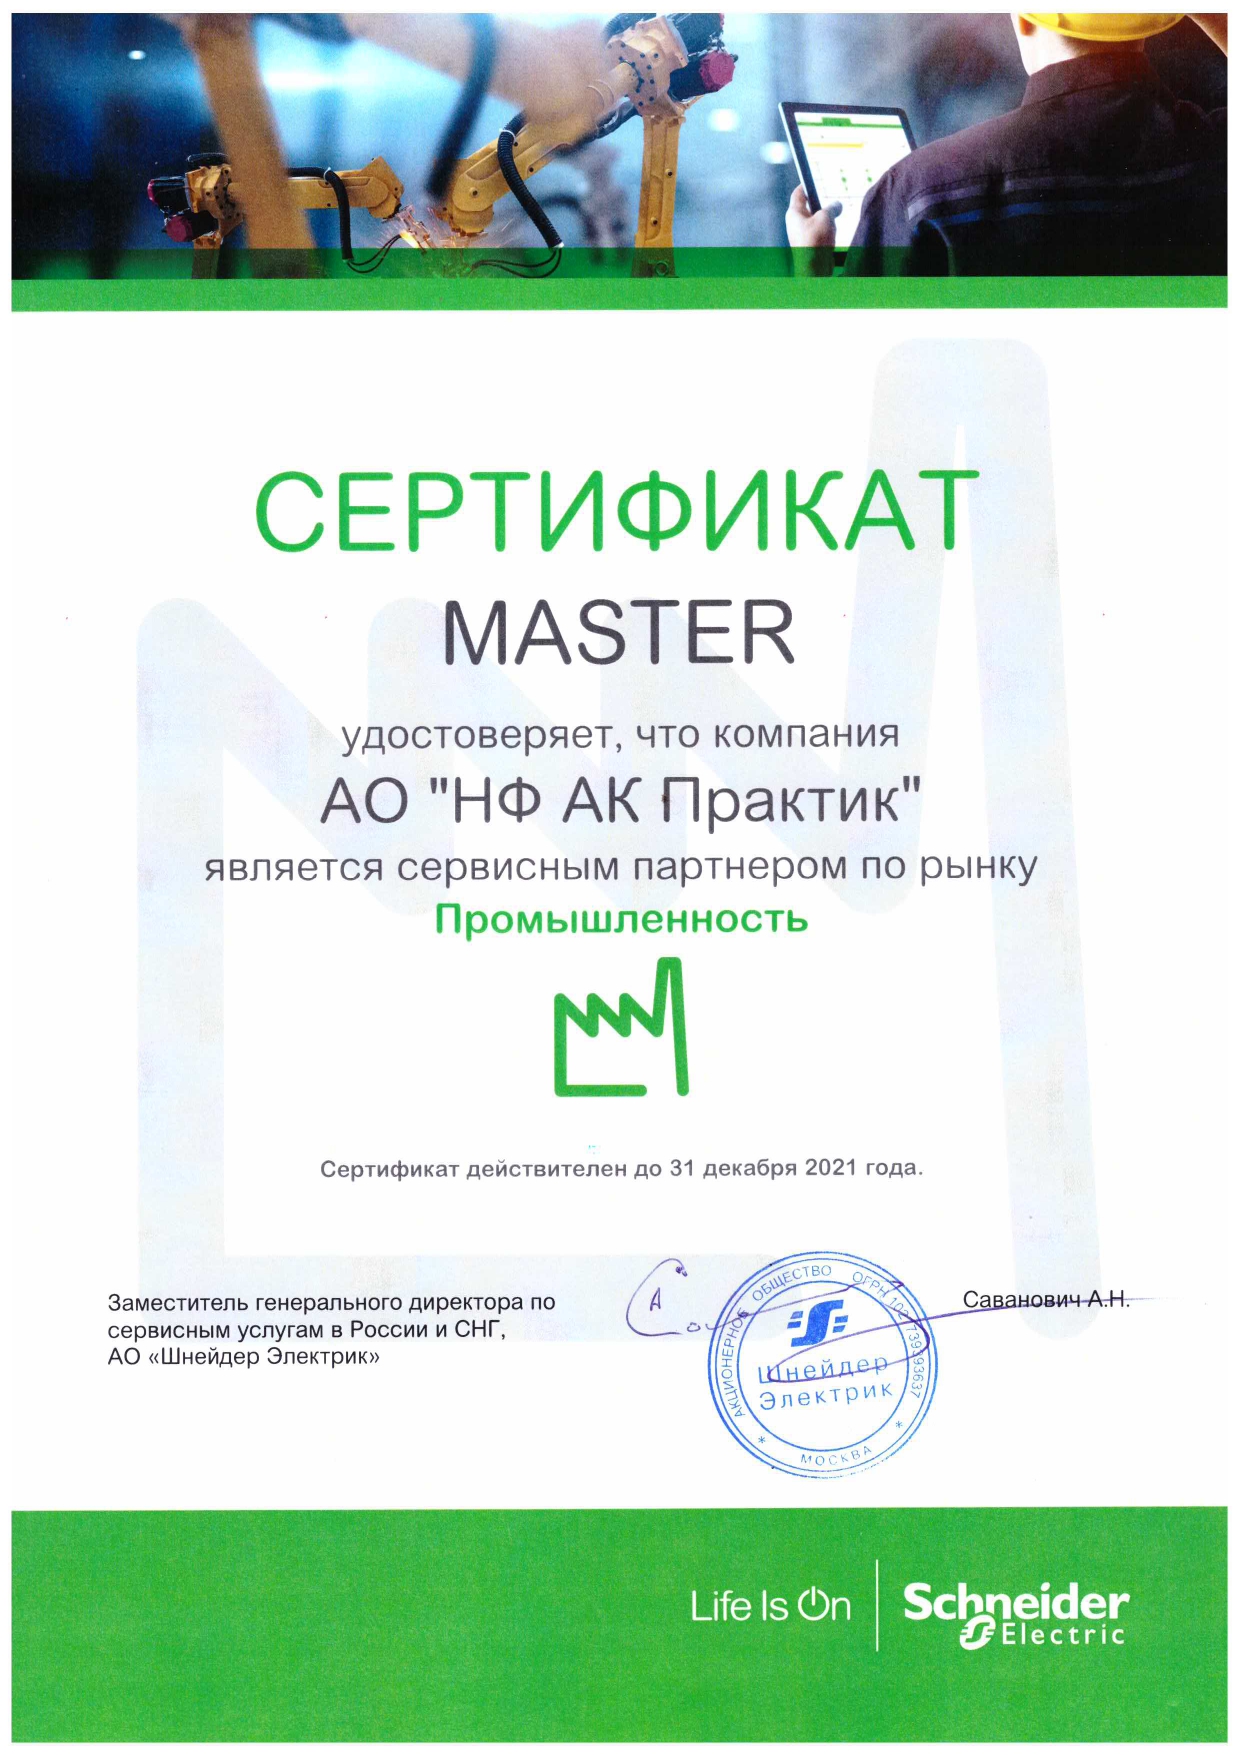 Сертификат Сервисного партнера Schneider Electric